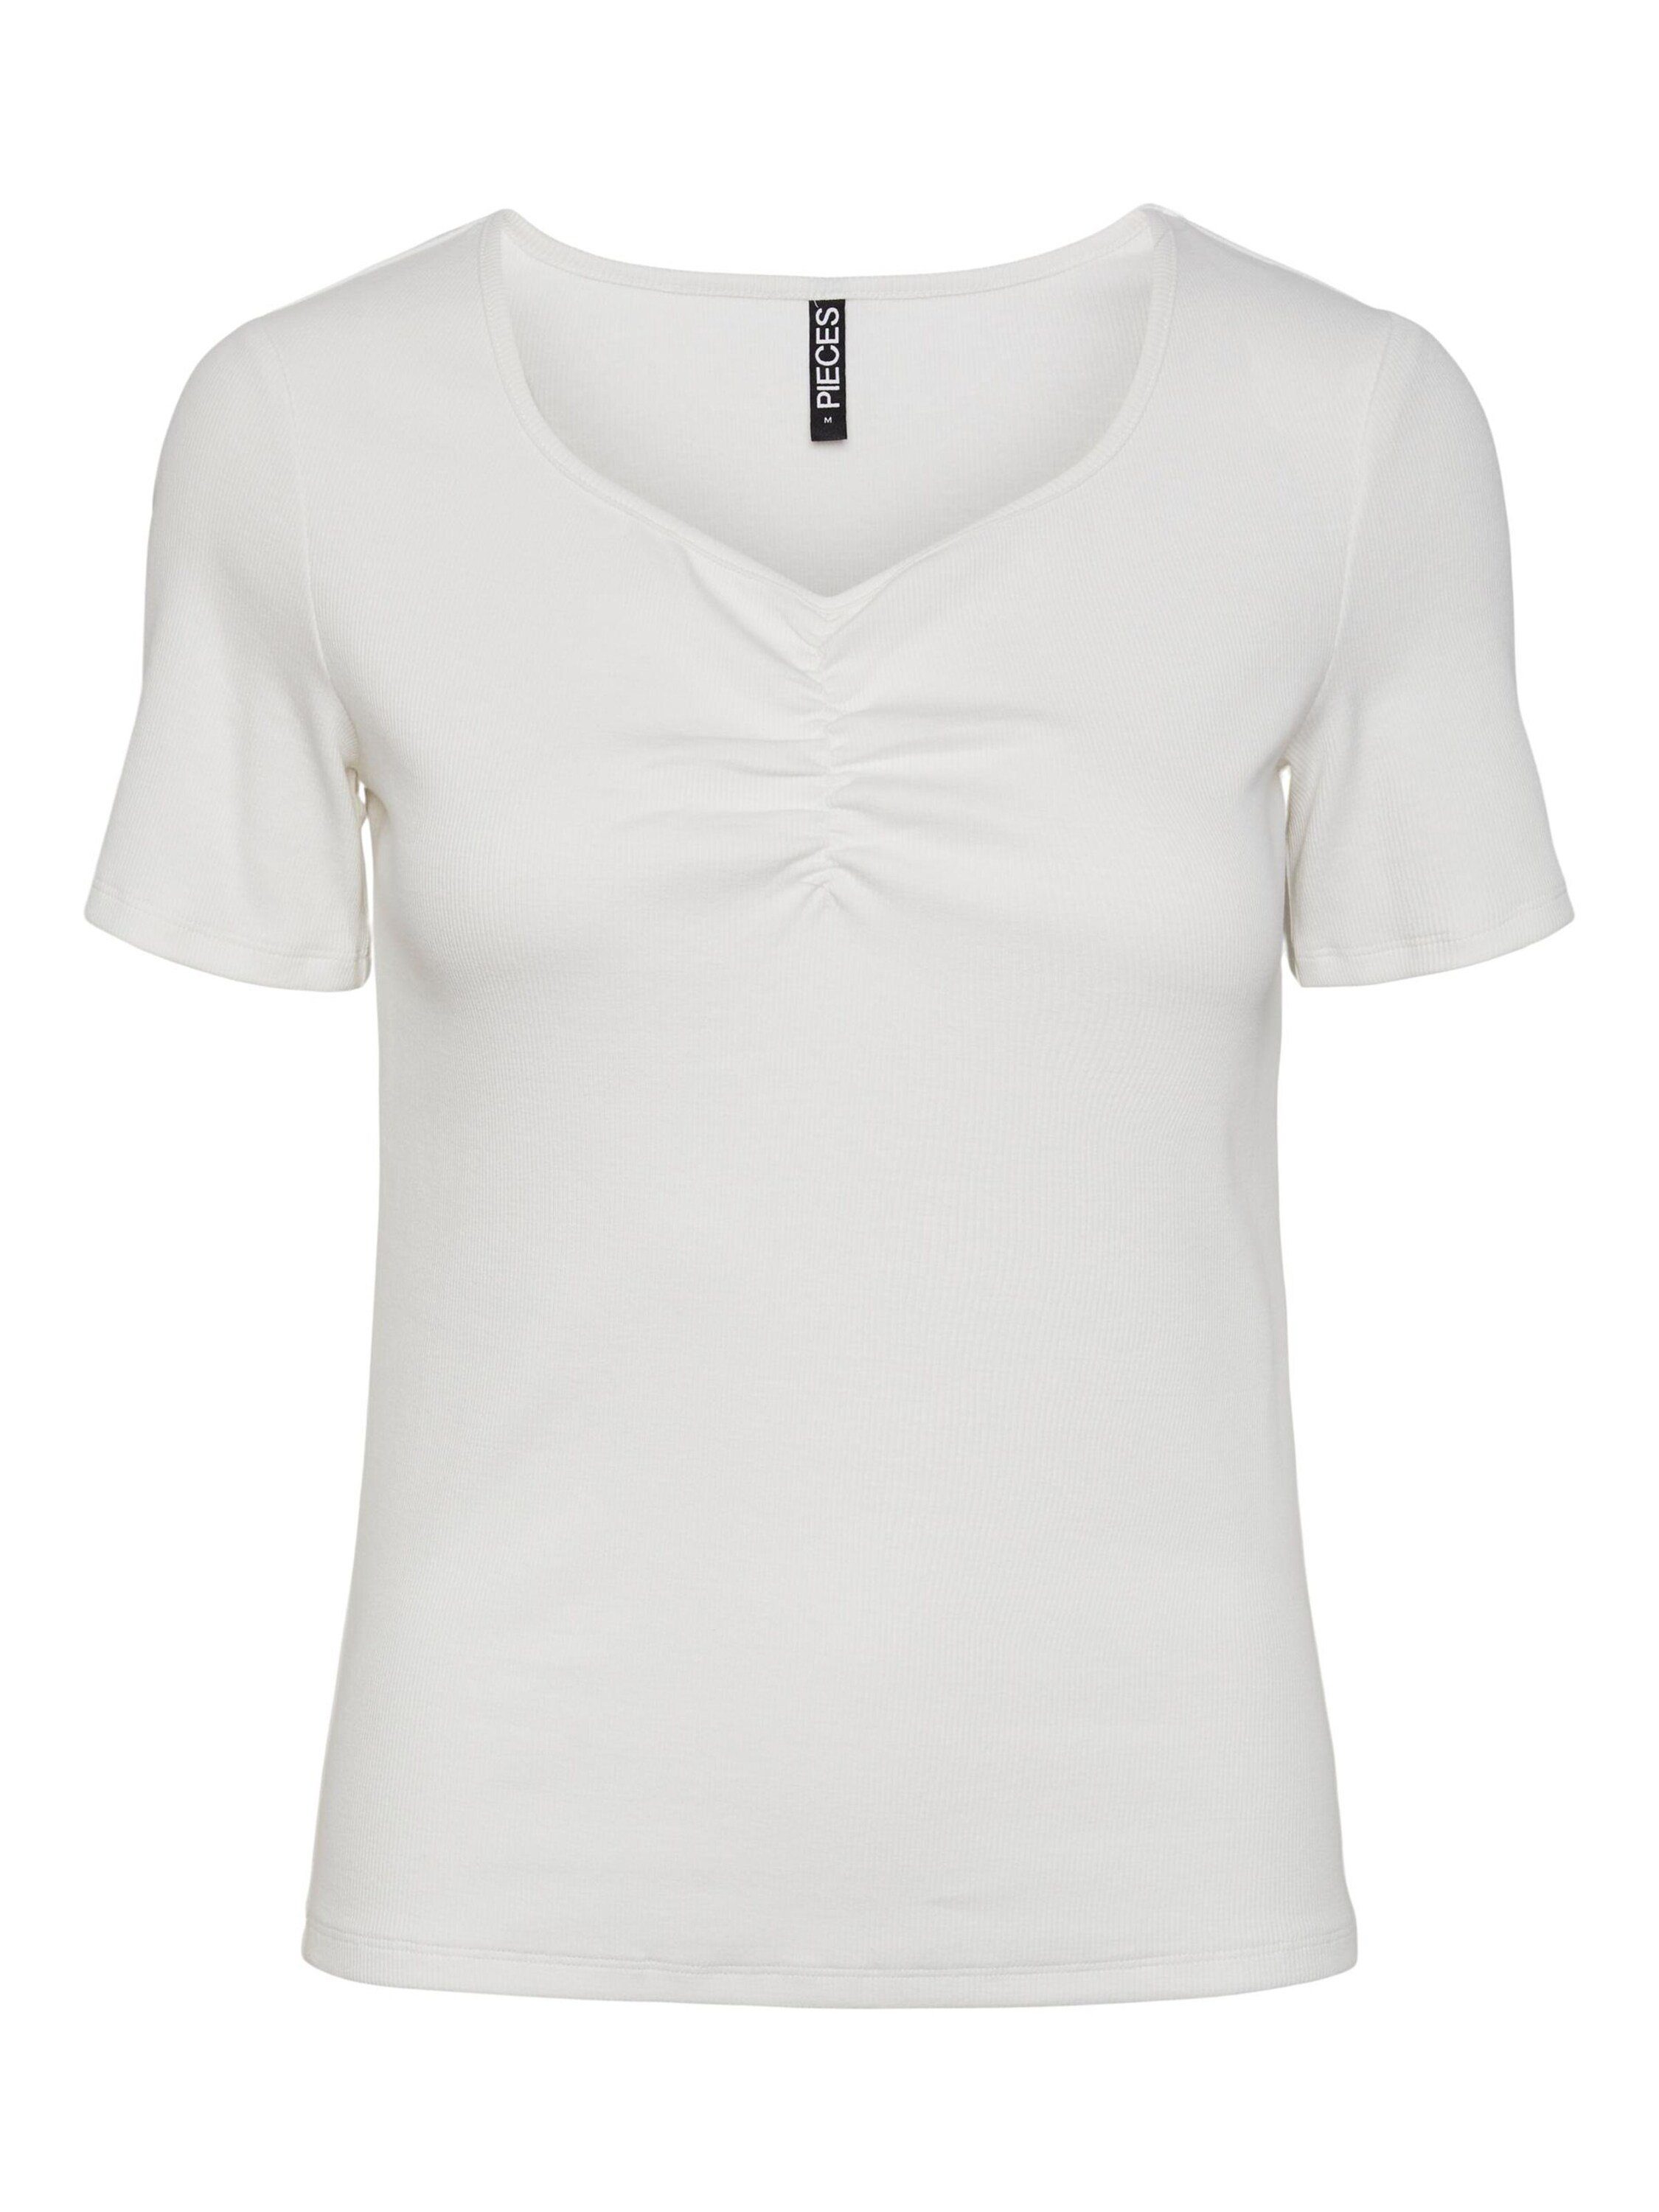 Pieces Damen T-Shirts | OTTO online kaufen